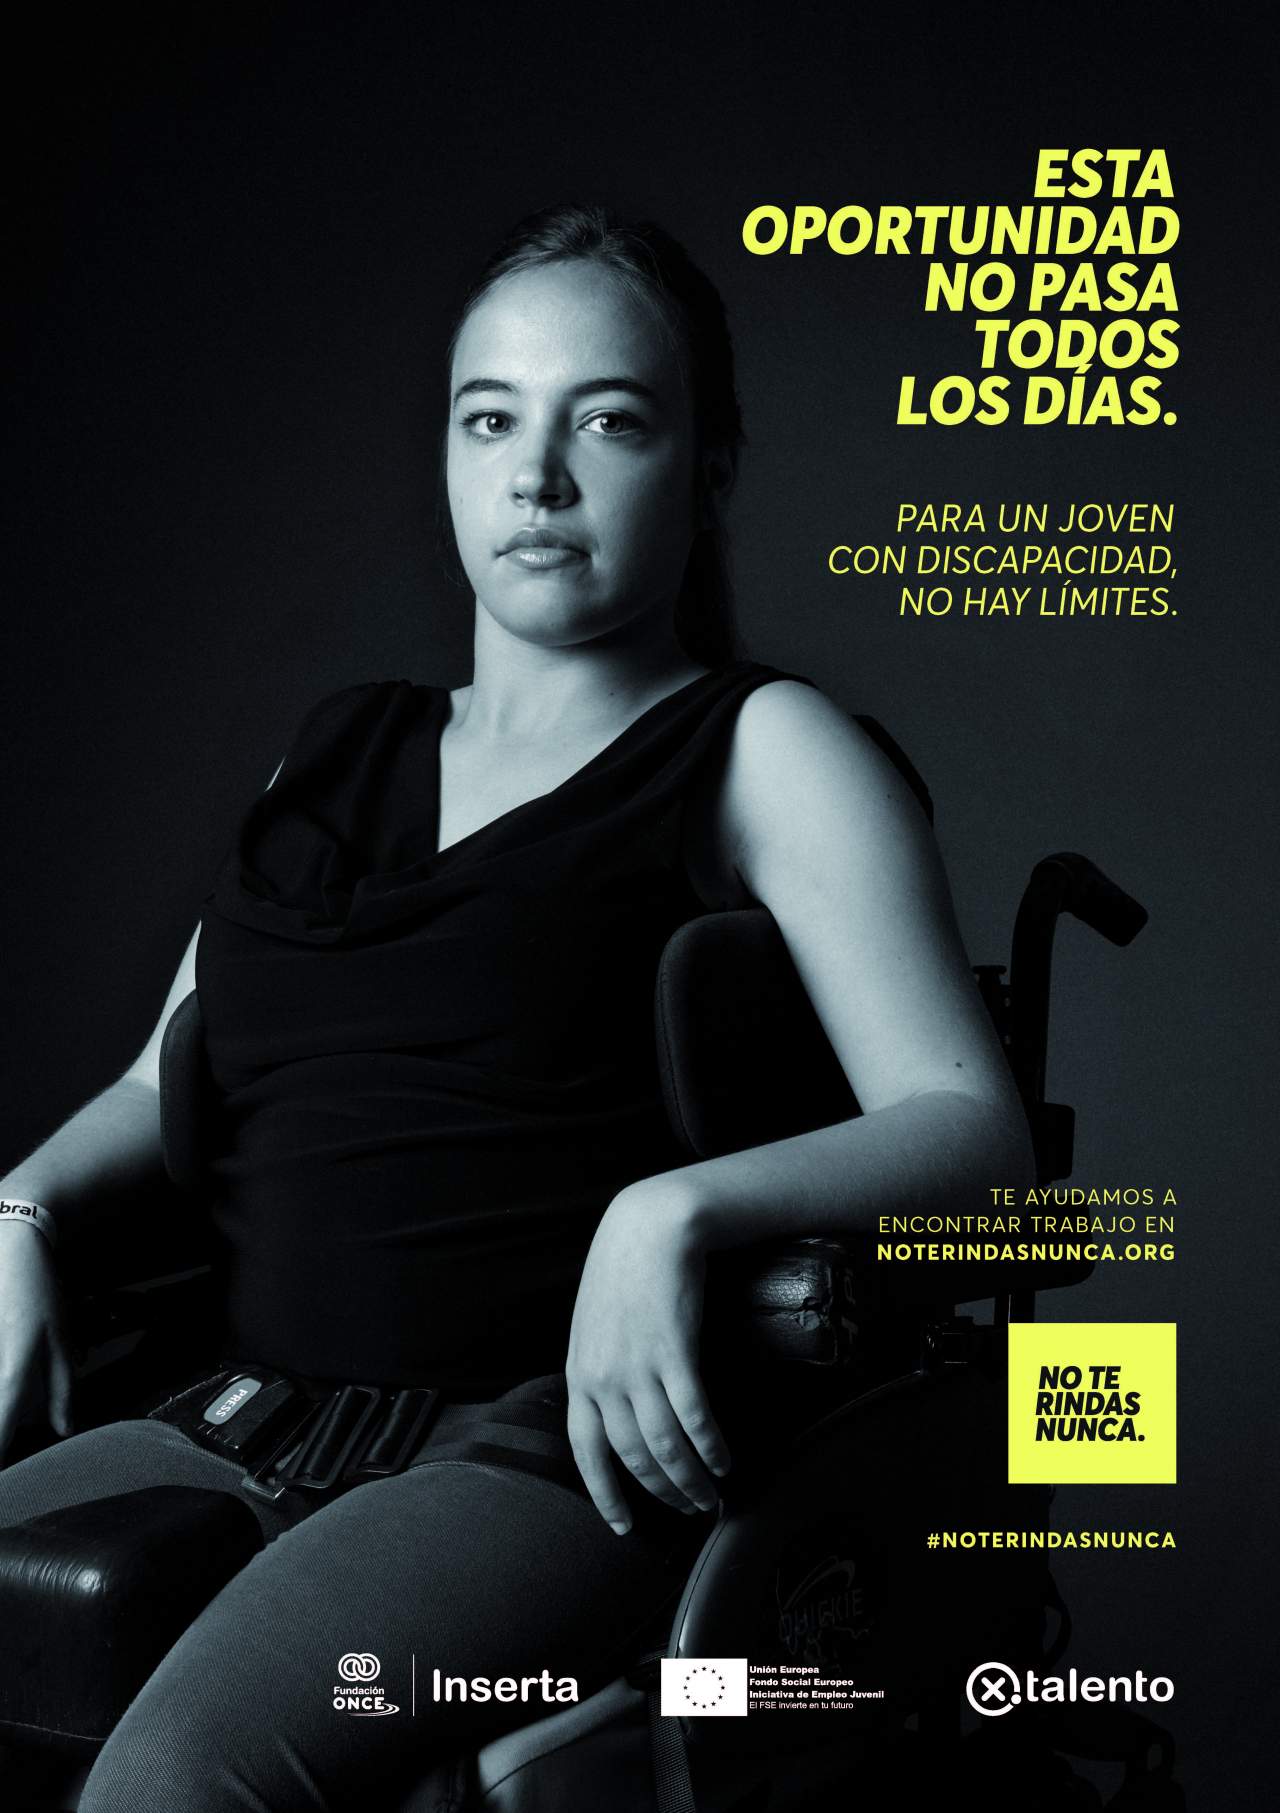 [FOTOS] La curiosa iniciativa para acercar a los jóvenes con discapacidad al empleo